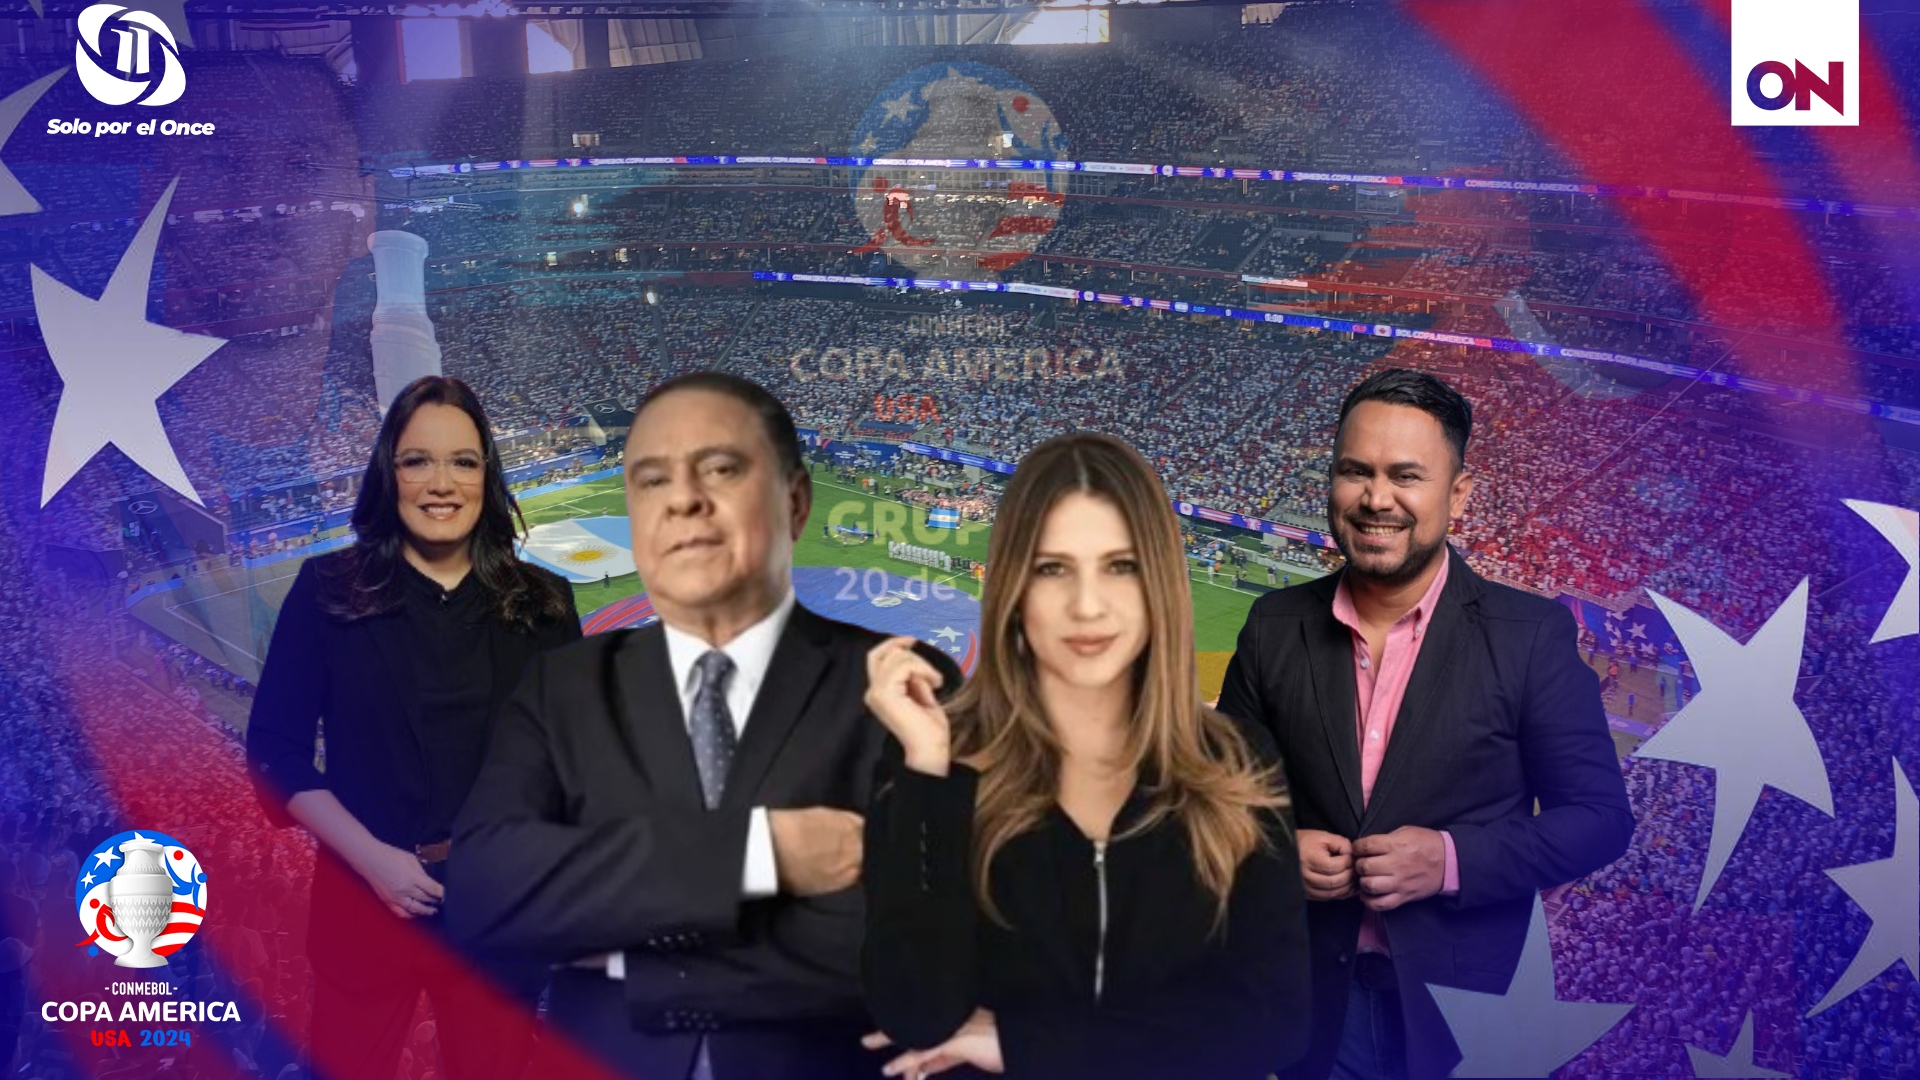 Argentina, favorita indiscutible: Análisis de 'Vive la Copa' destaca su dominio en la inauguración ante Canadá